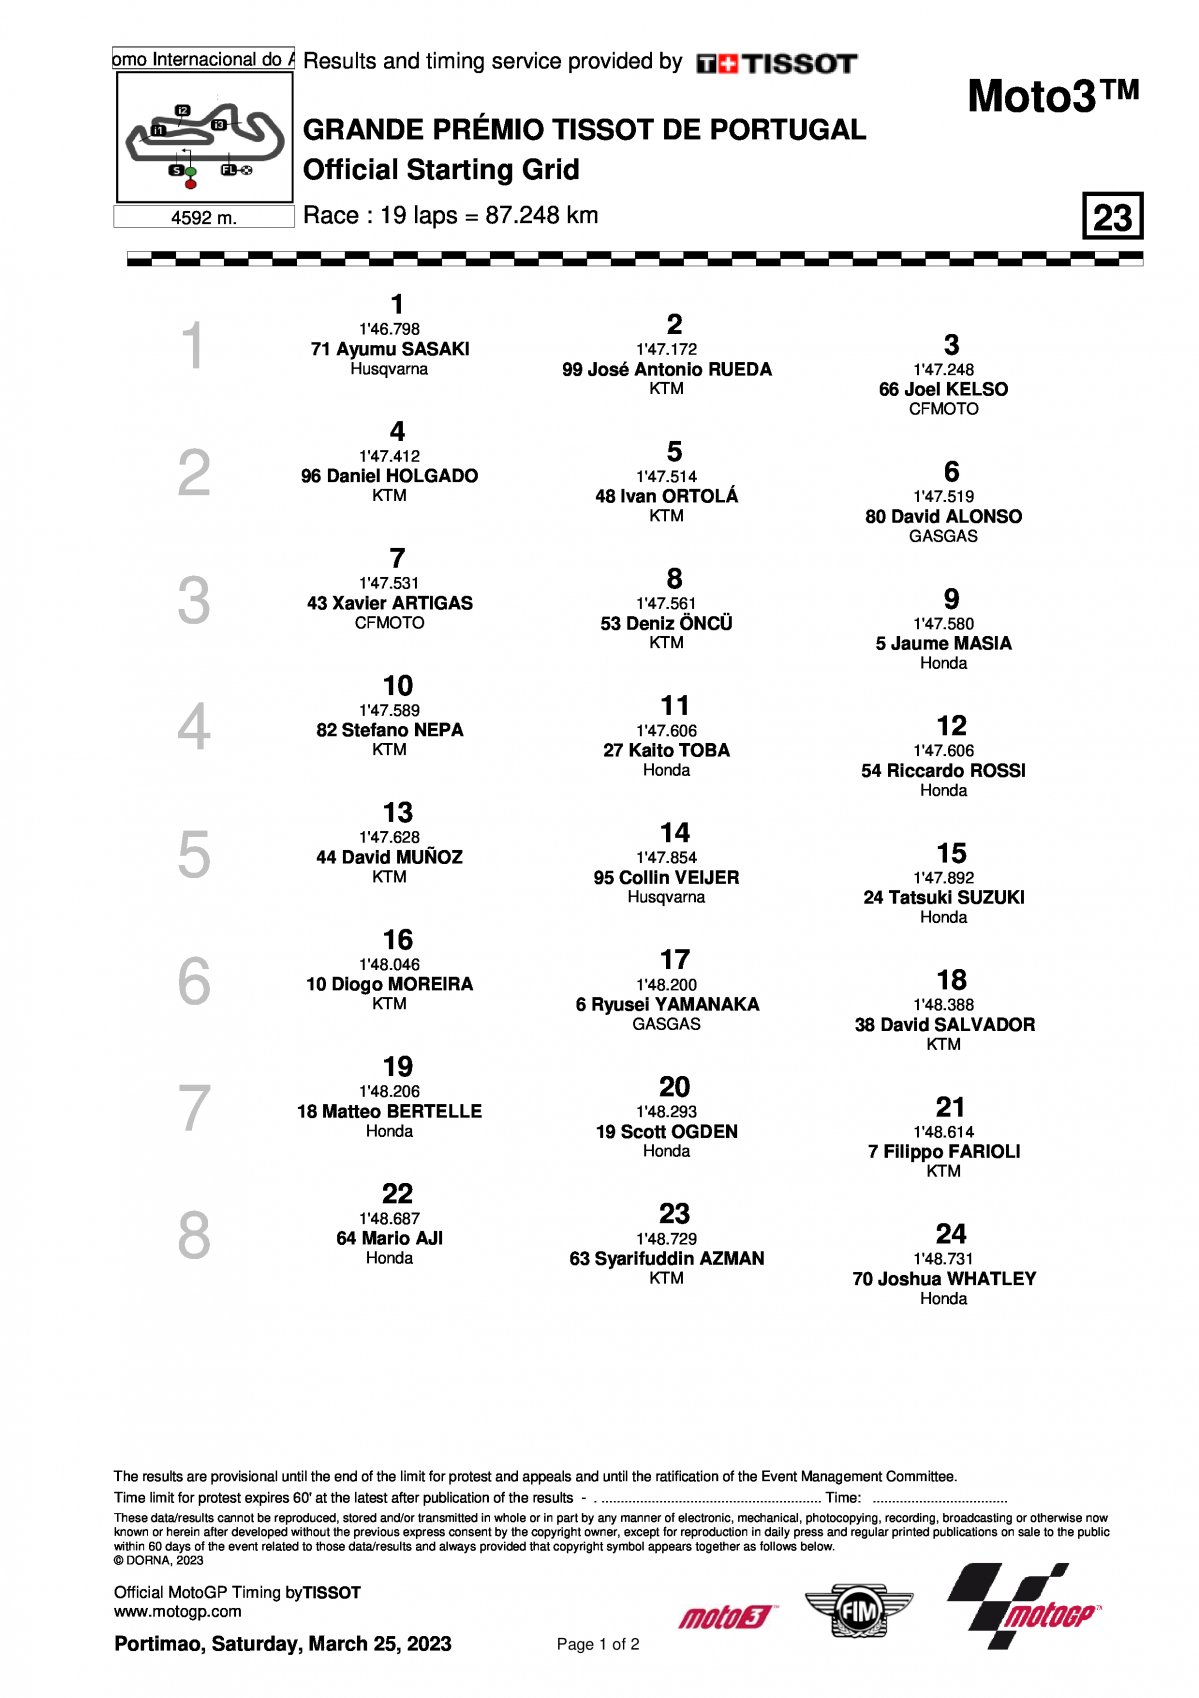 Стартовая решетка Гран-При Португалии Moto3 (26/03/2023)